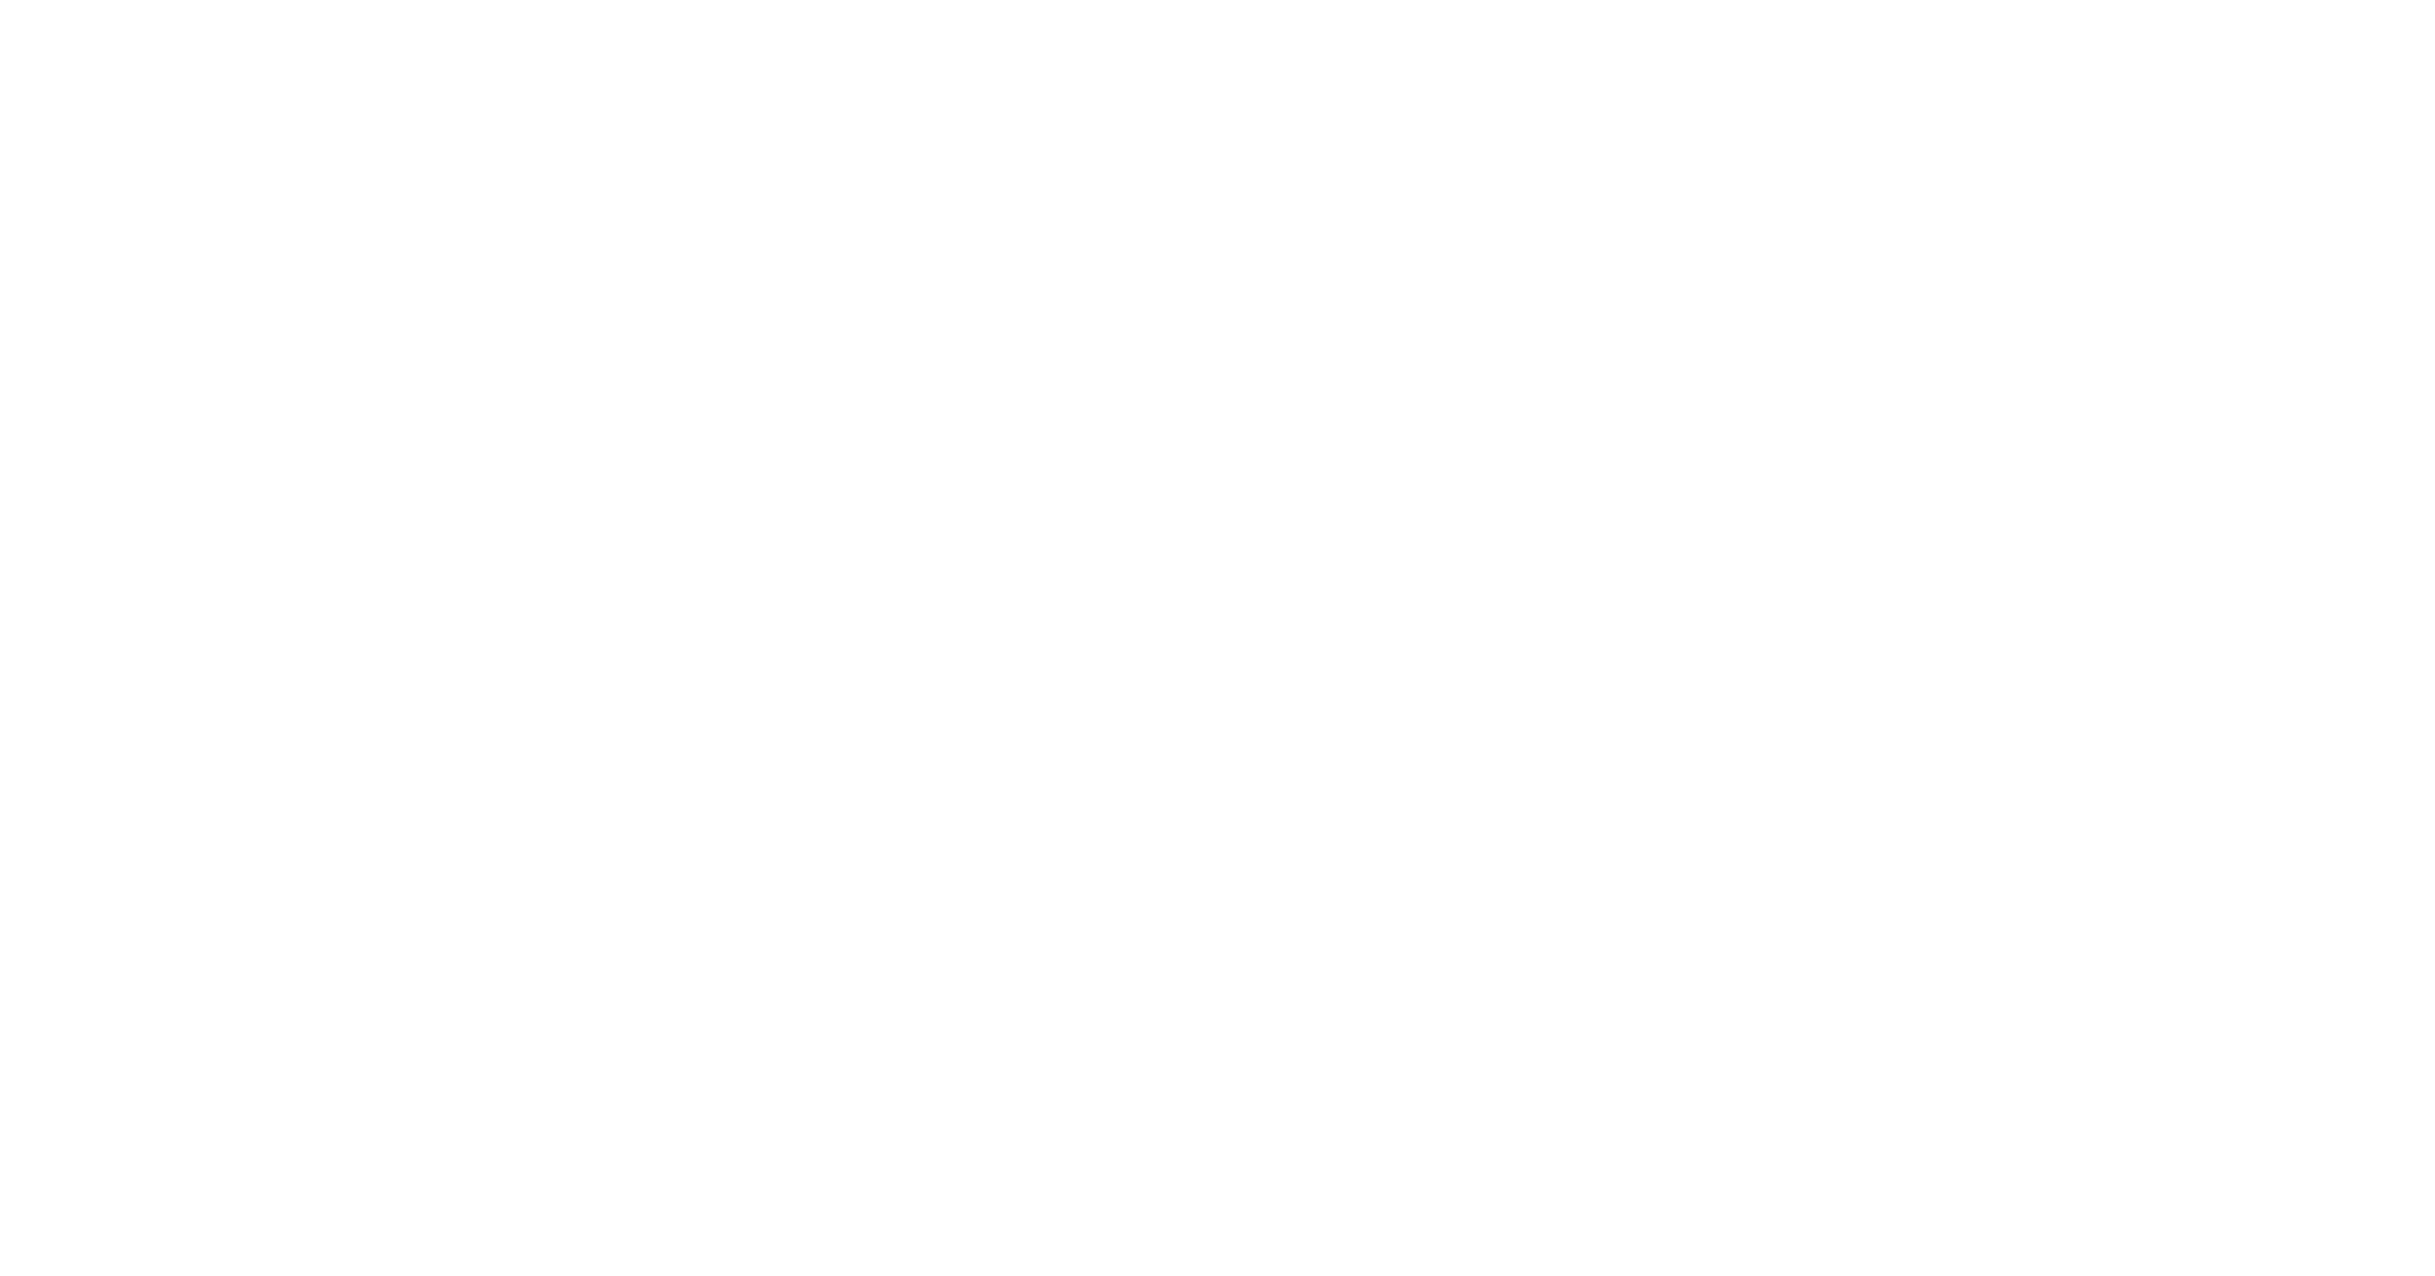 Ara Sargsyan & Hakob Kojoyan Foundation